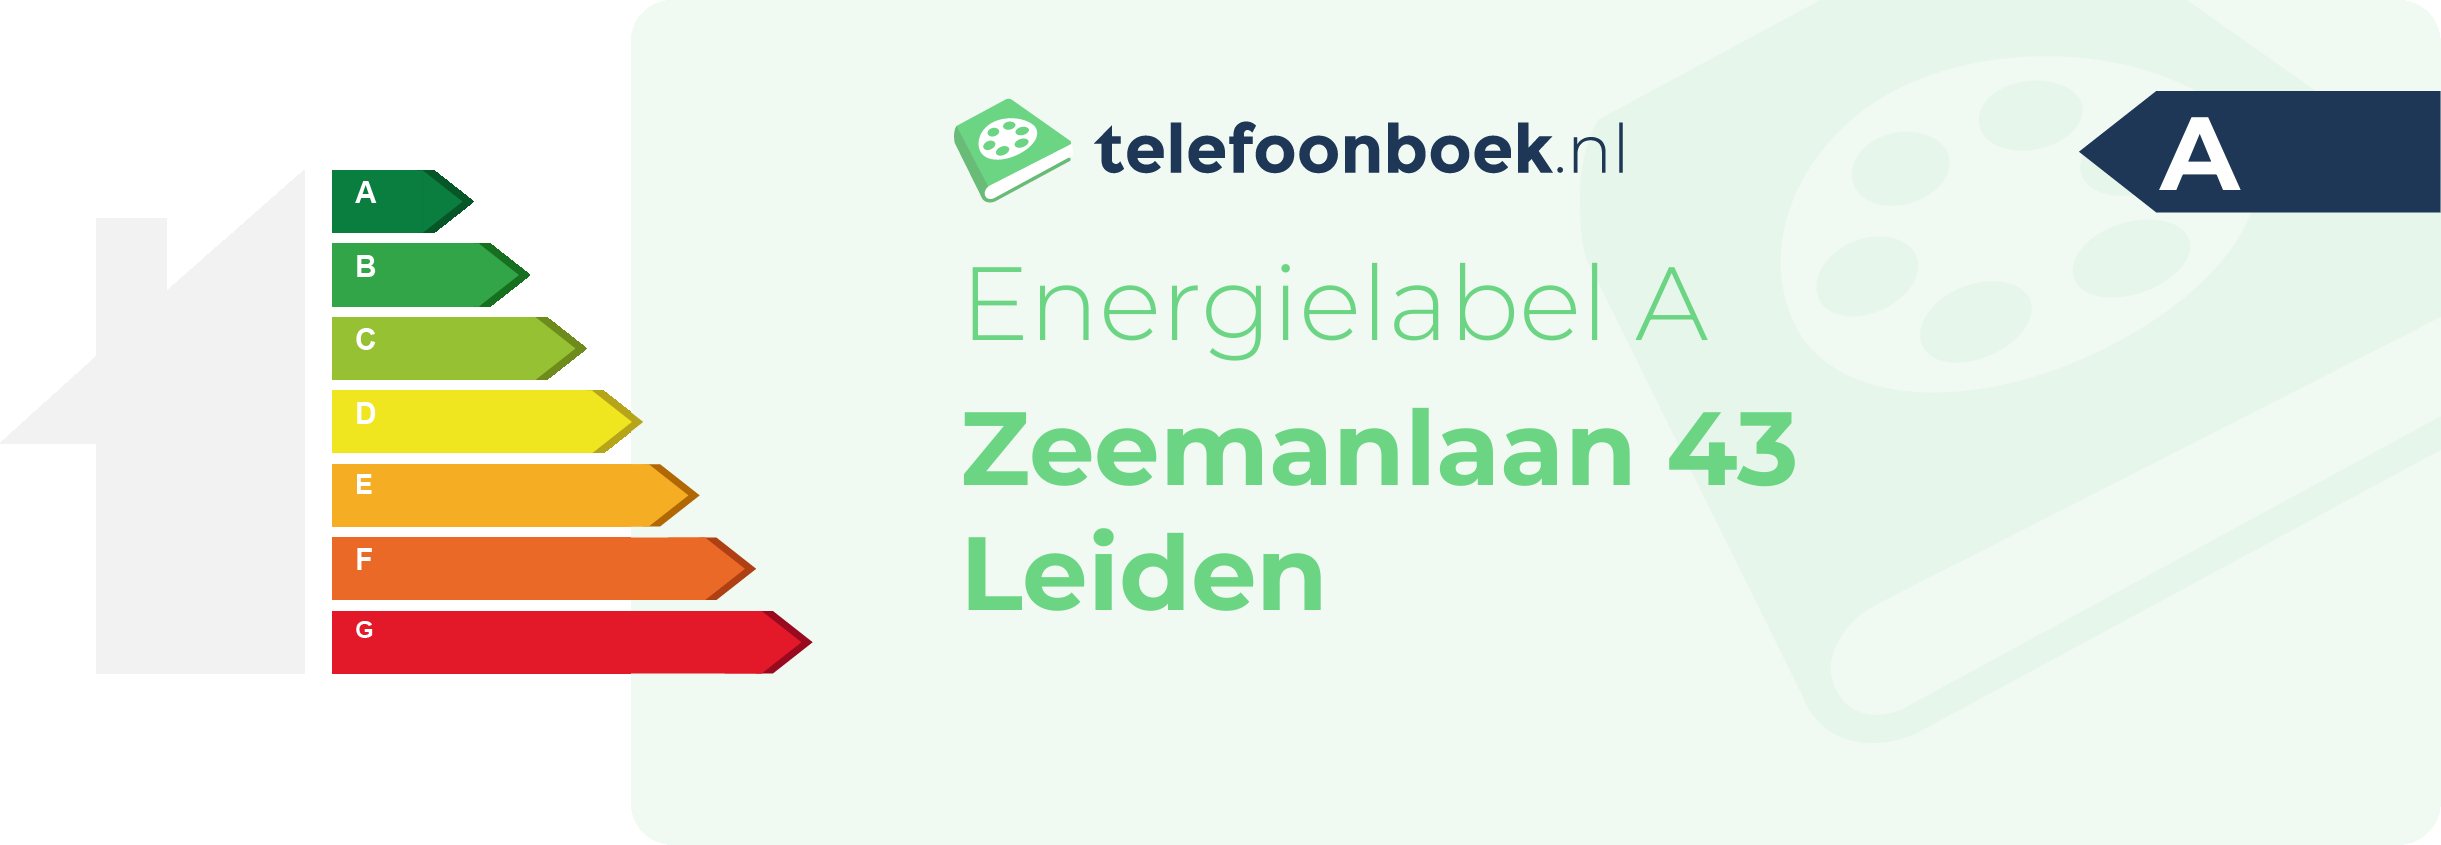 Energielabel Zeemanlaan 43 Leiden